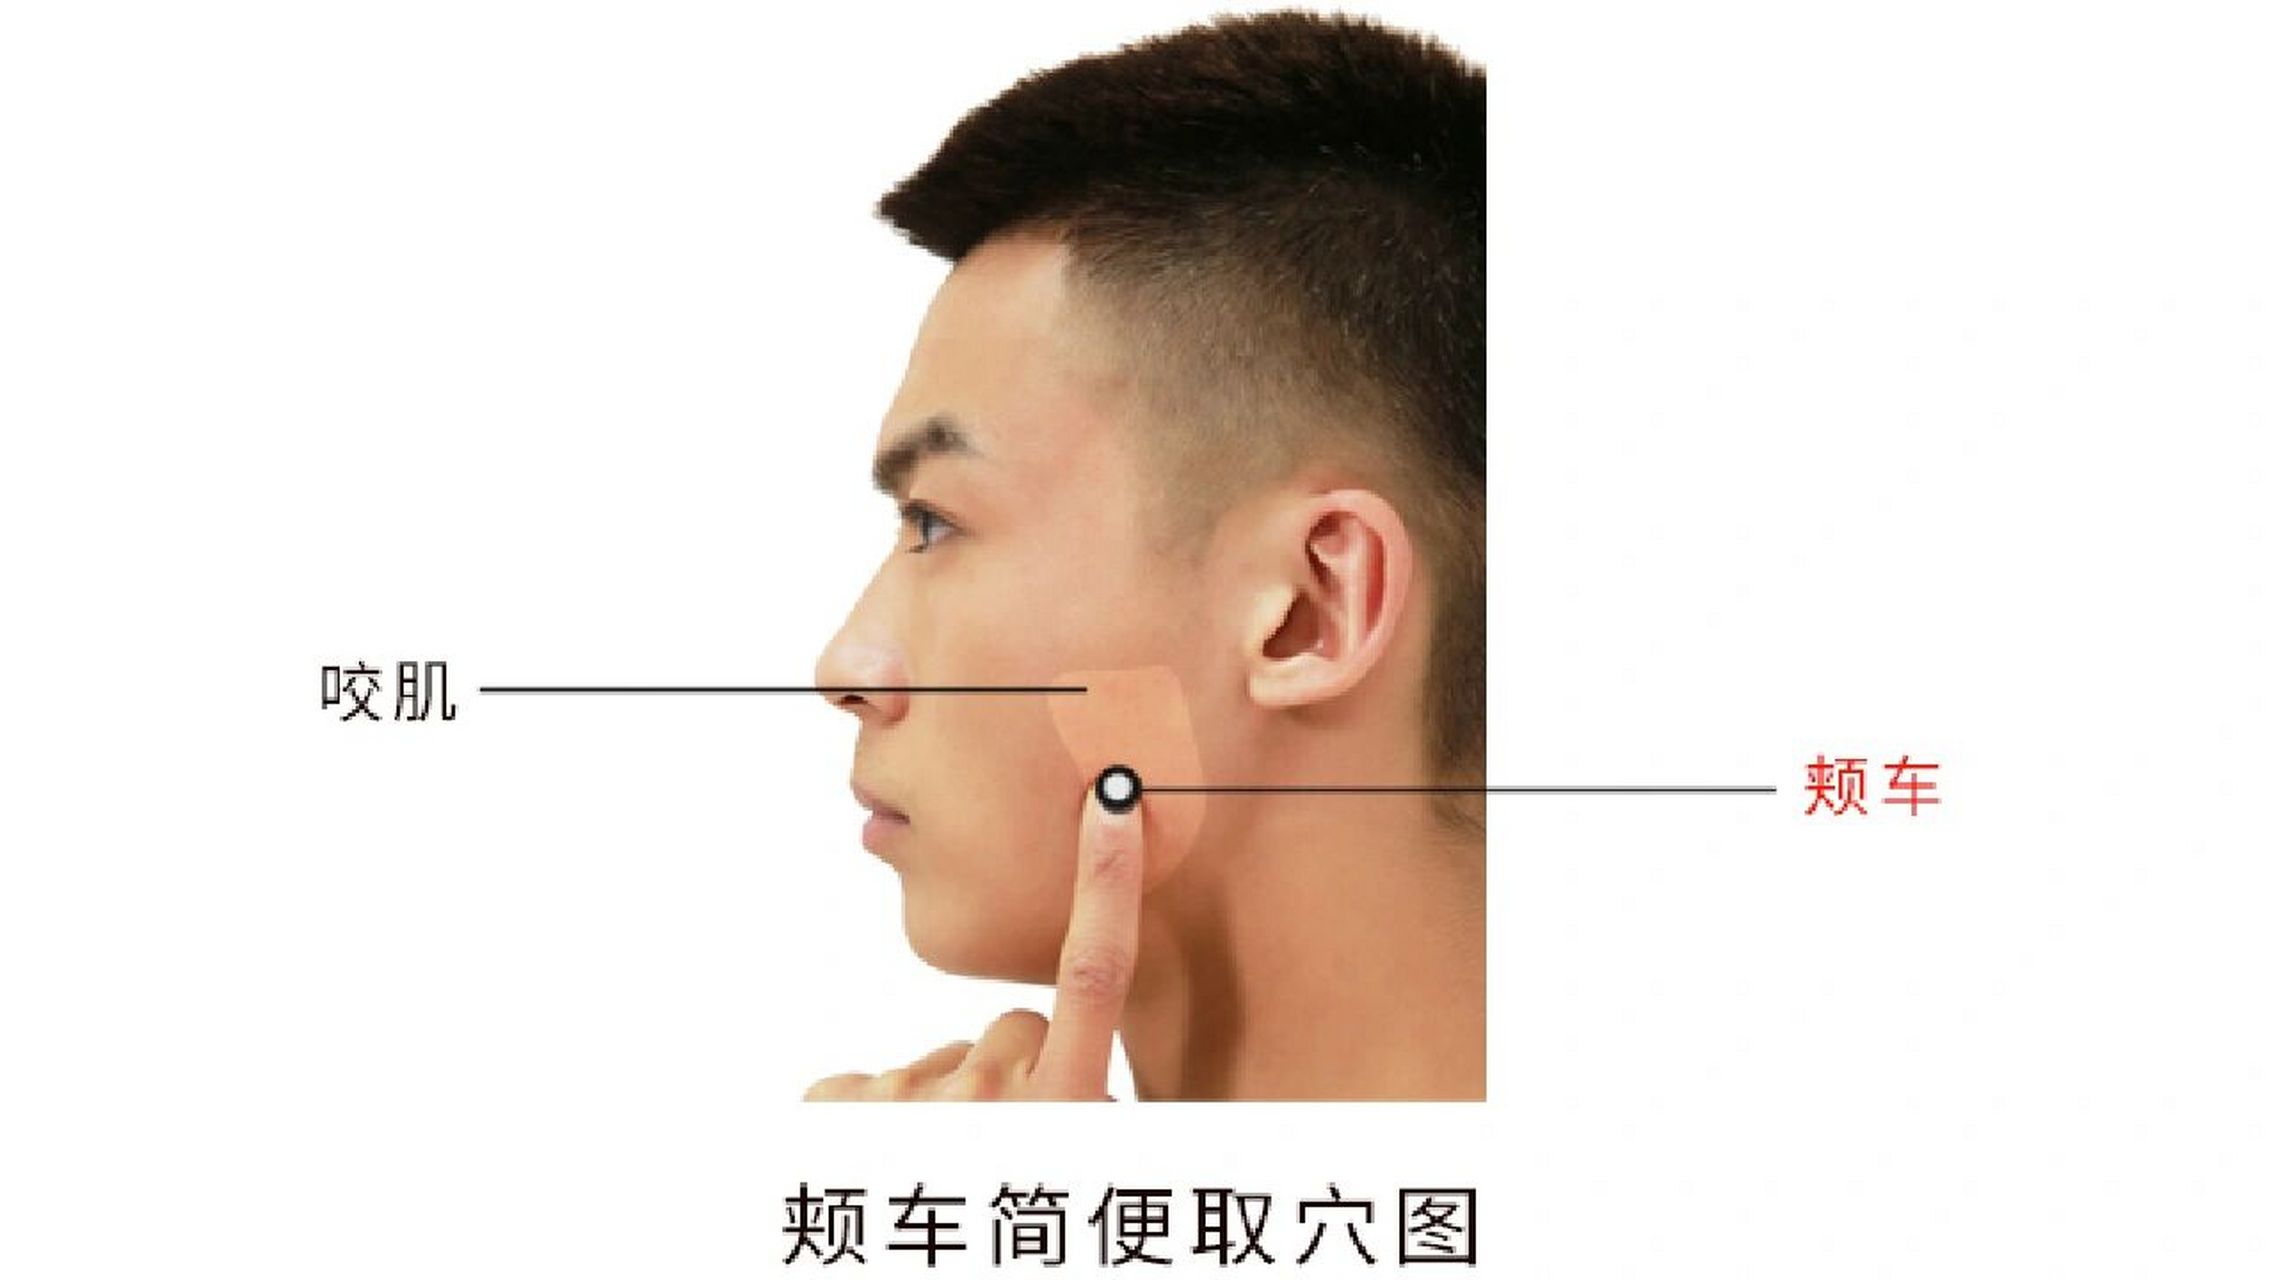 【定位】在面颊部,下颌角前上方约1横指(中指)